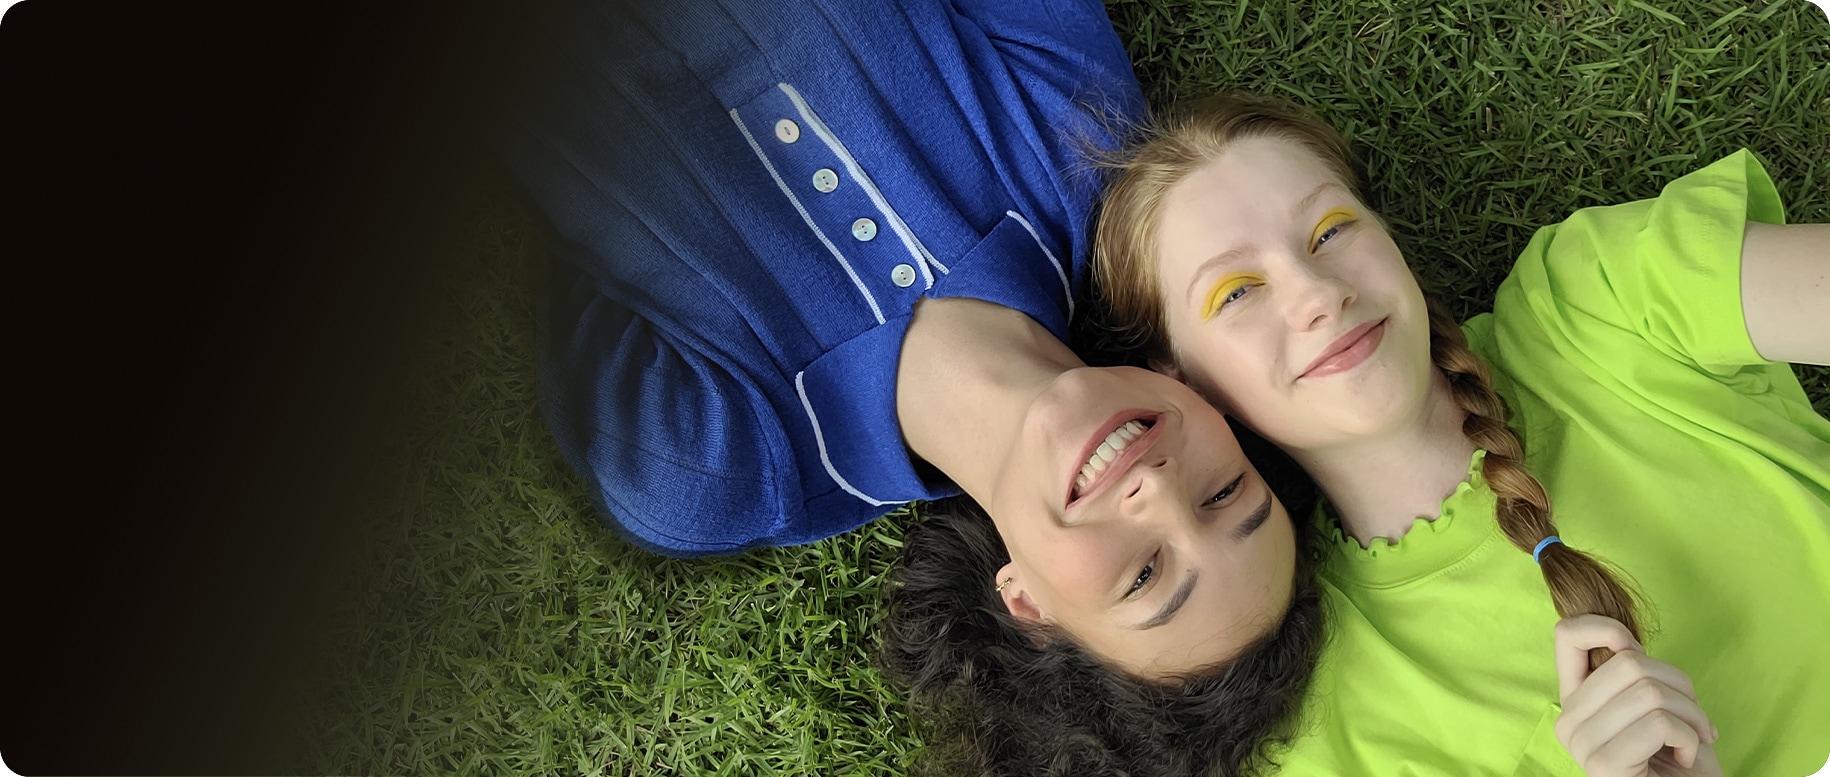 Une vue aérienne de deux femmes allongées côte à côte sur l'herbe. La femme de gauche porte une chemise à col bleu tandis que la femme de droite porte un haut vert citron. Leurs têtes sont pressées l'une contre l'autre à partir des extrémités opposées. Ils sourient tous les deux à la caméra.